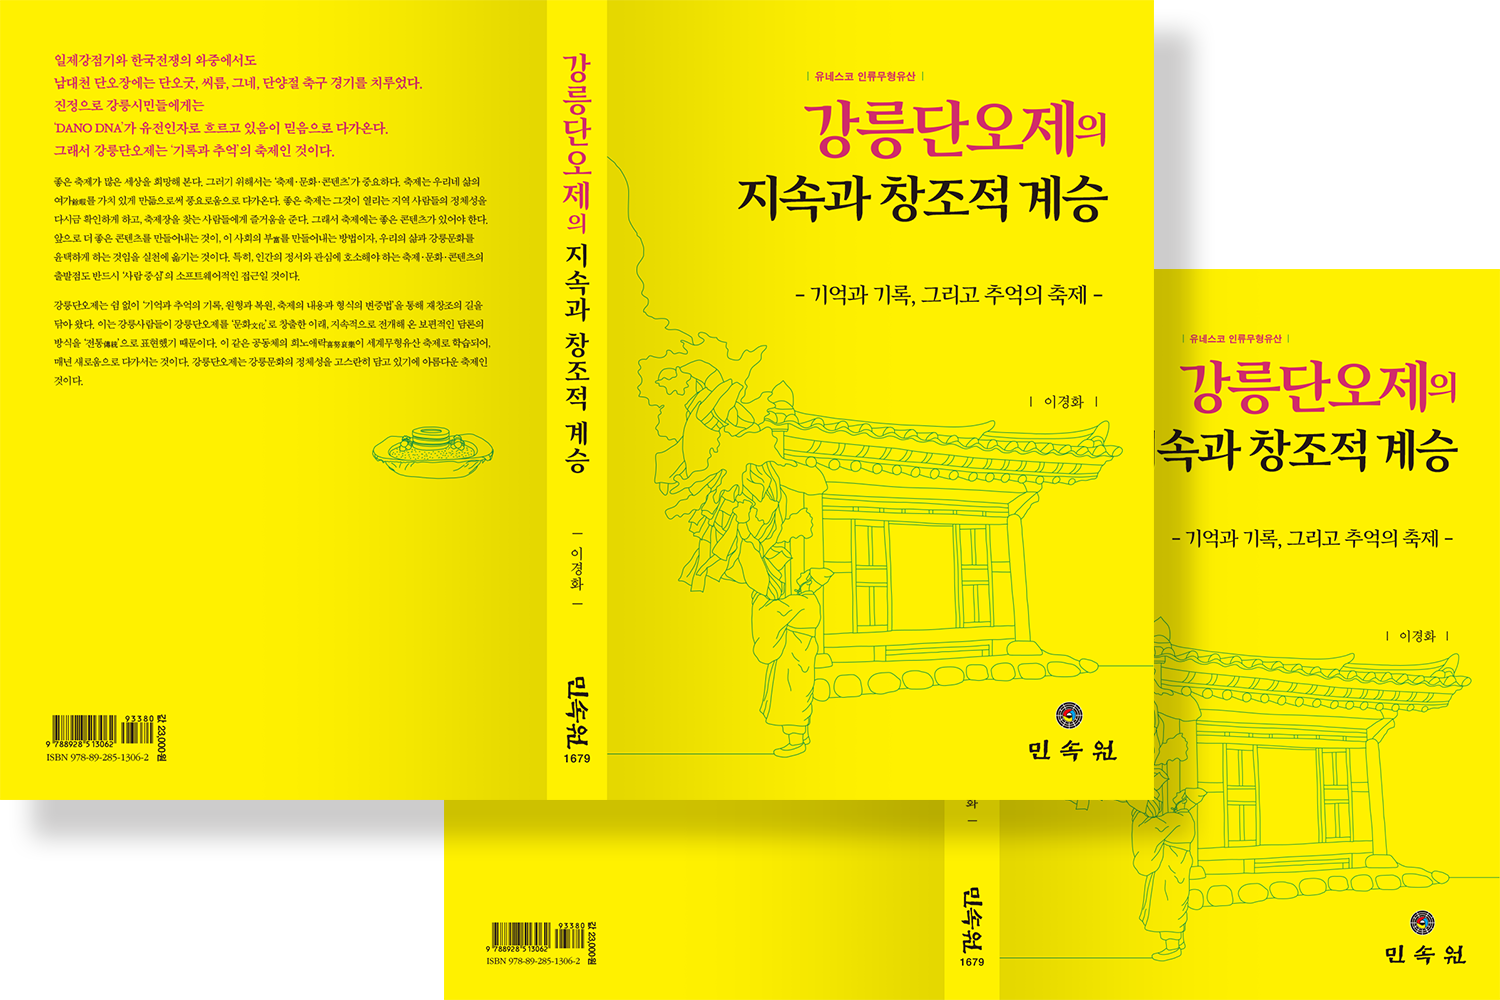 2019 강릉단오제의 지속과 창조적 계승